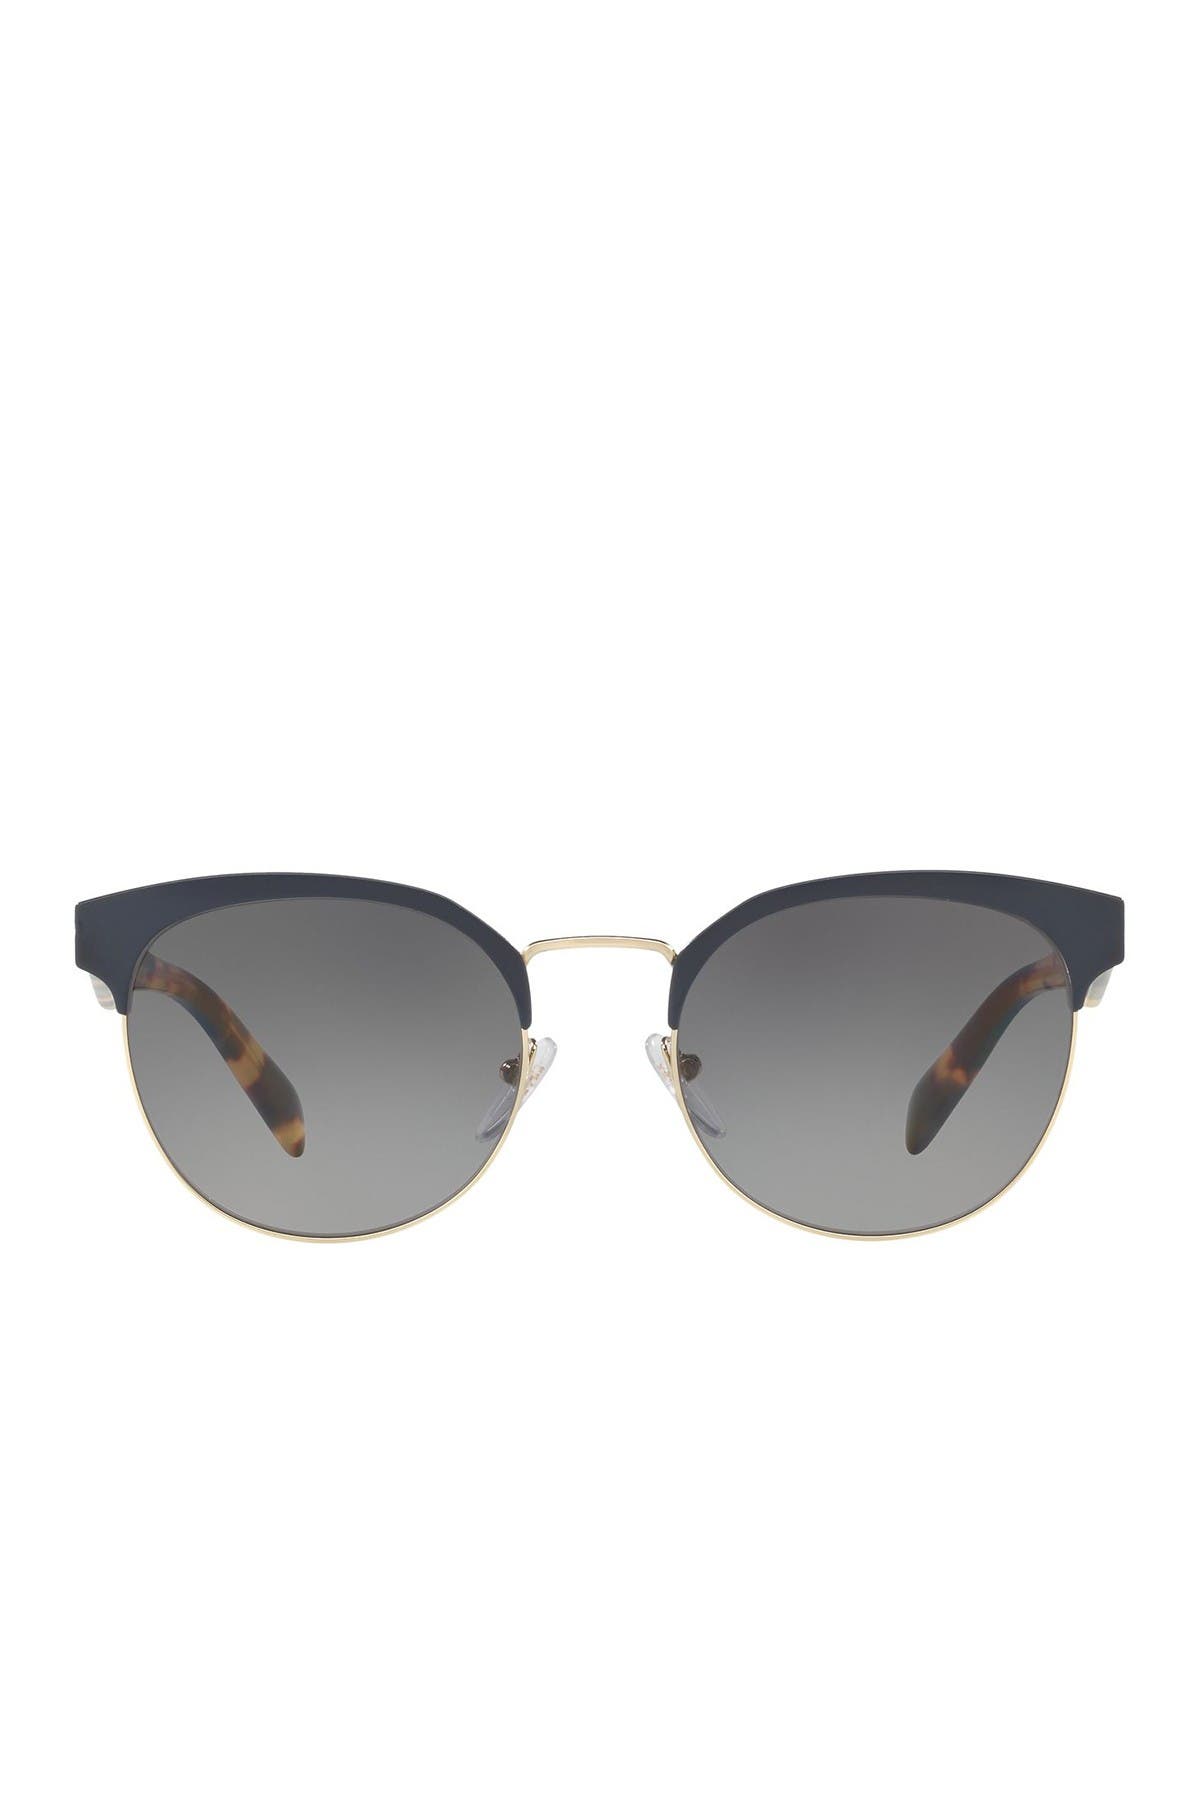 Prada | 54mm Phantos Round Sunglasses 